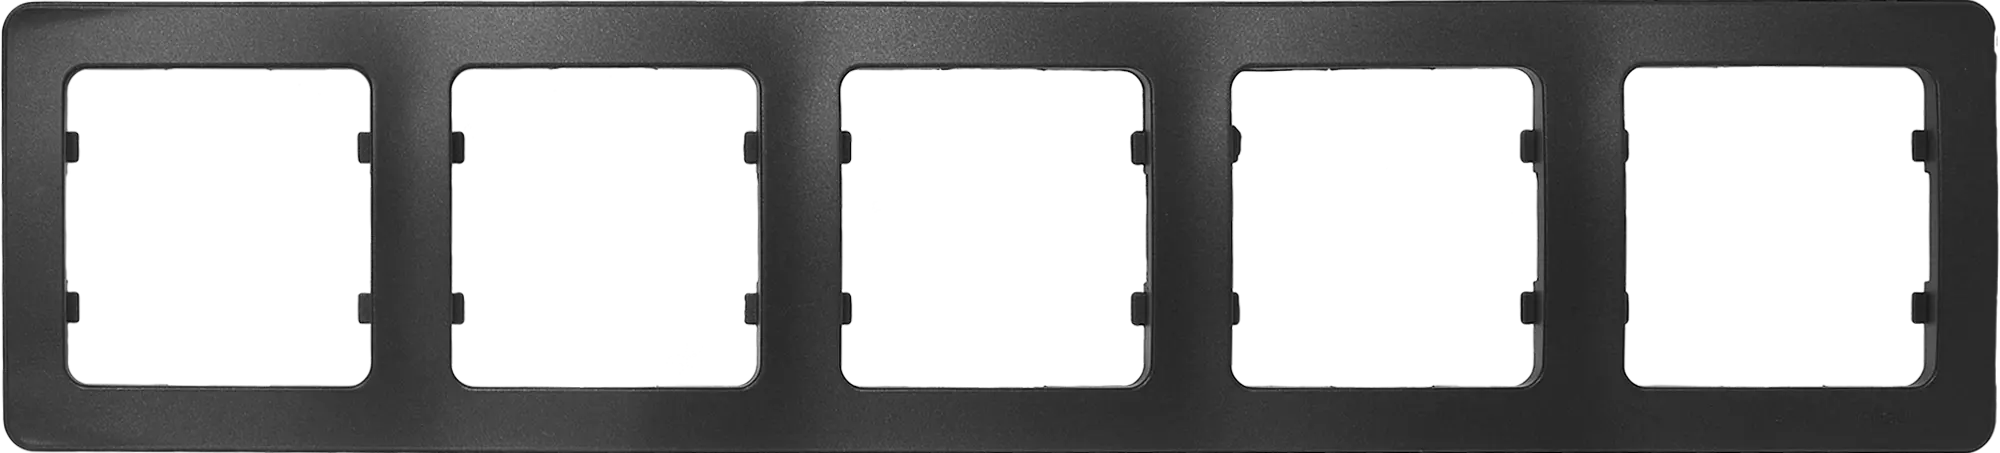 Рамка Hegel Master 5 M 36.2x8.1 см пластик цвет черный рамка hegel master 5 m 36 2x8 1 см пластик слоновая кость